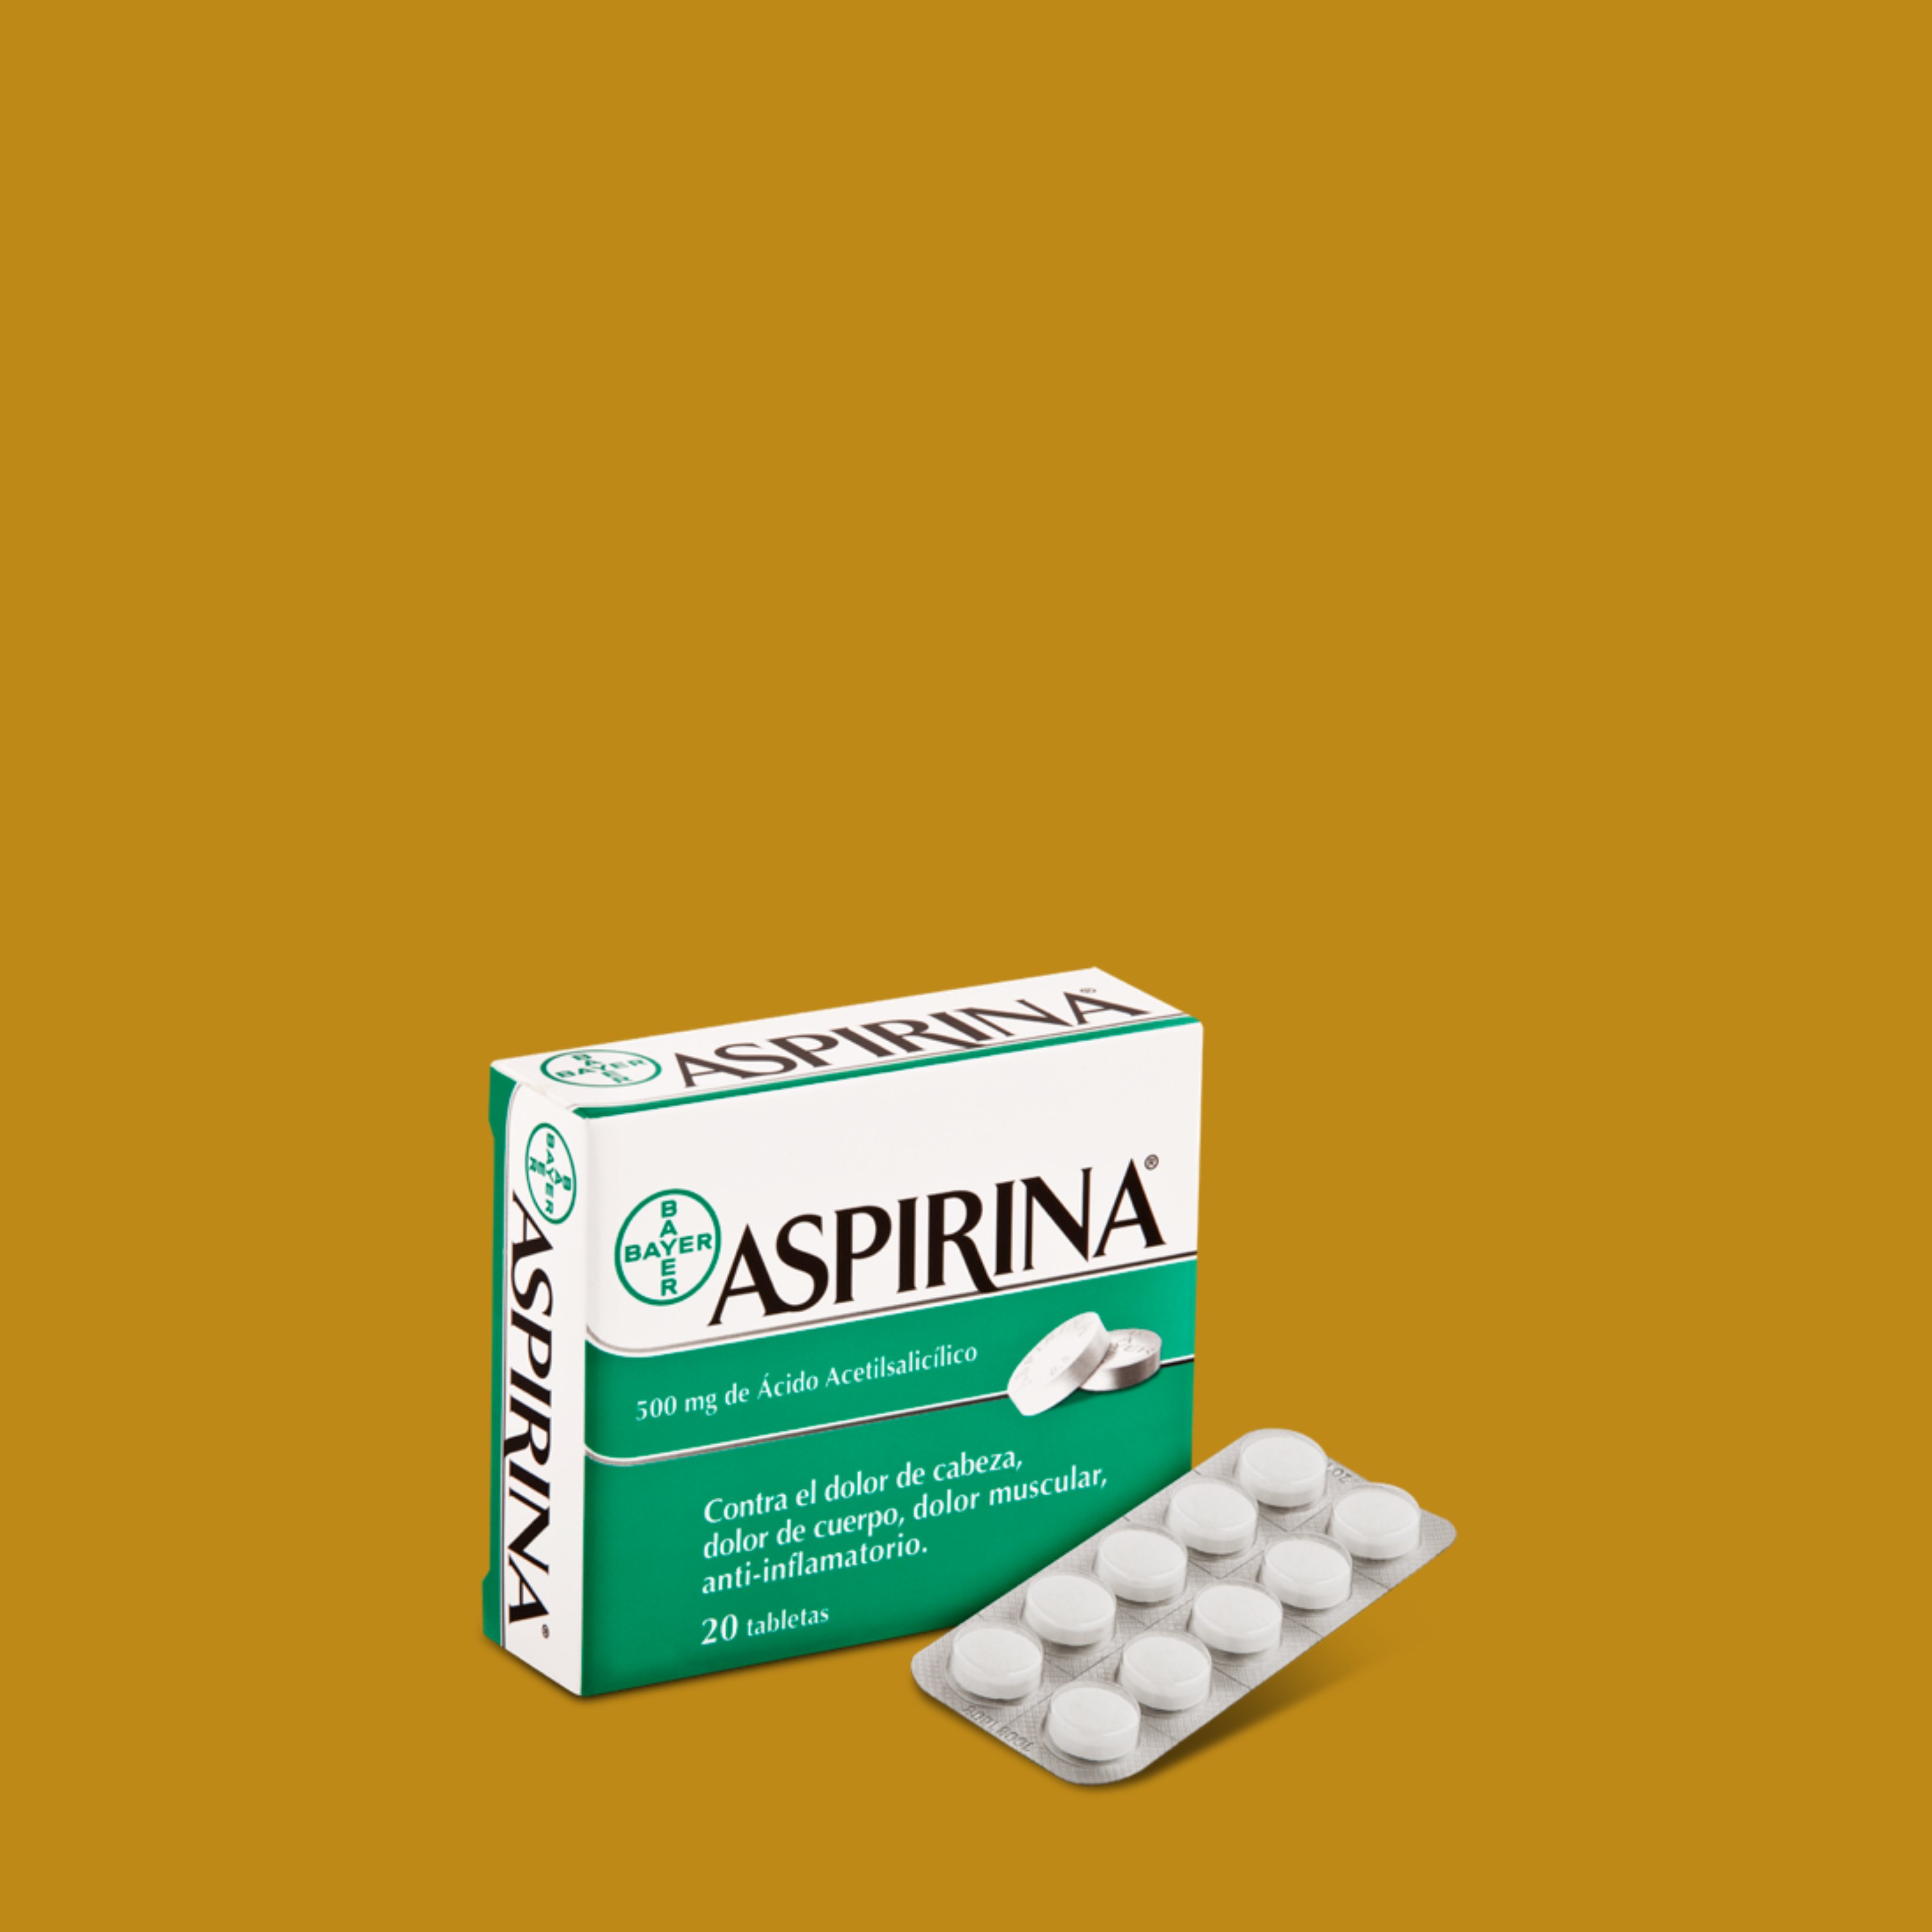 La ciència desmenteix una creença arrelada sobre l'aspirina